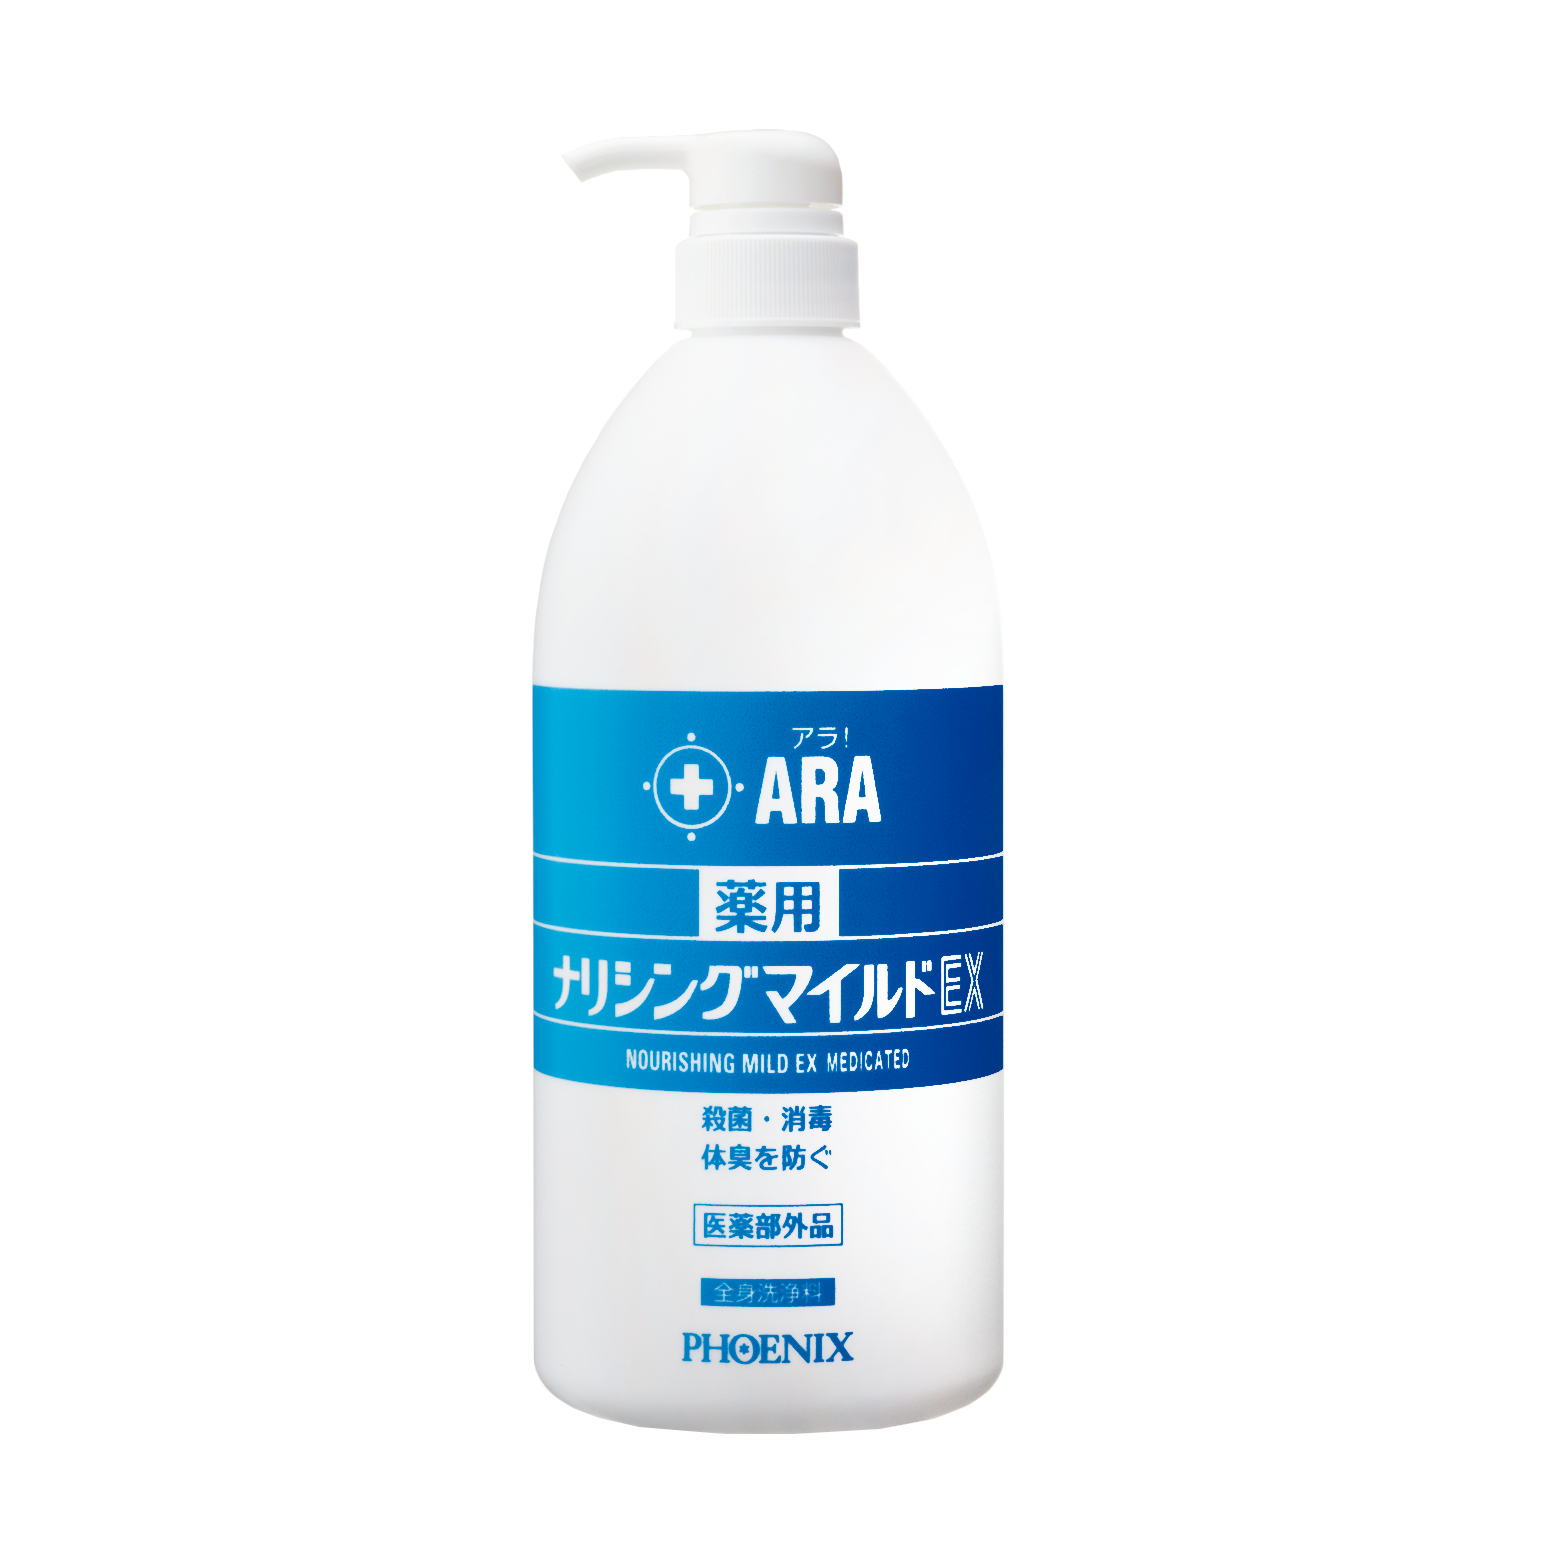 アラ アクトフォーム 4L フェニックス (介護 風呂 入浴 保湿) 介護用品